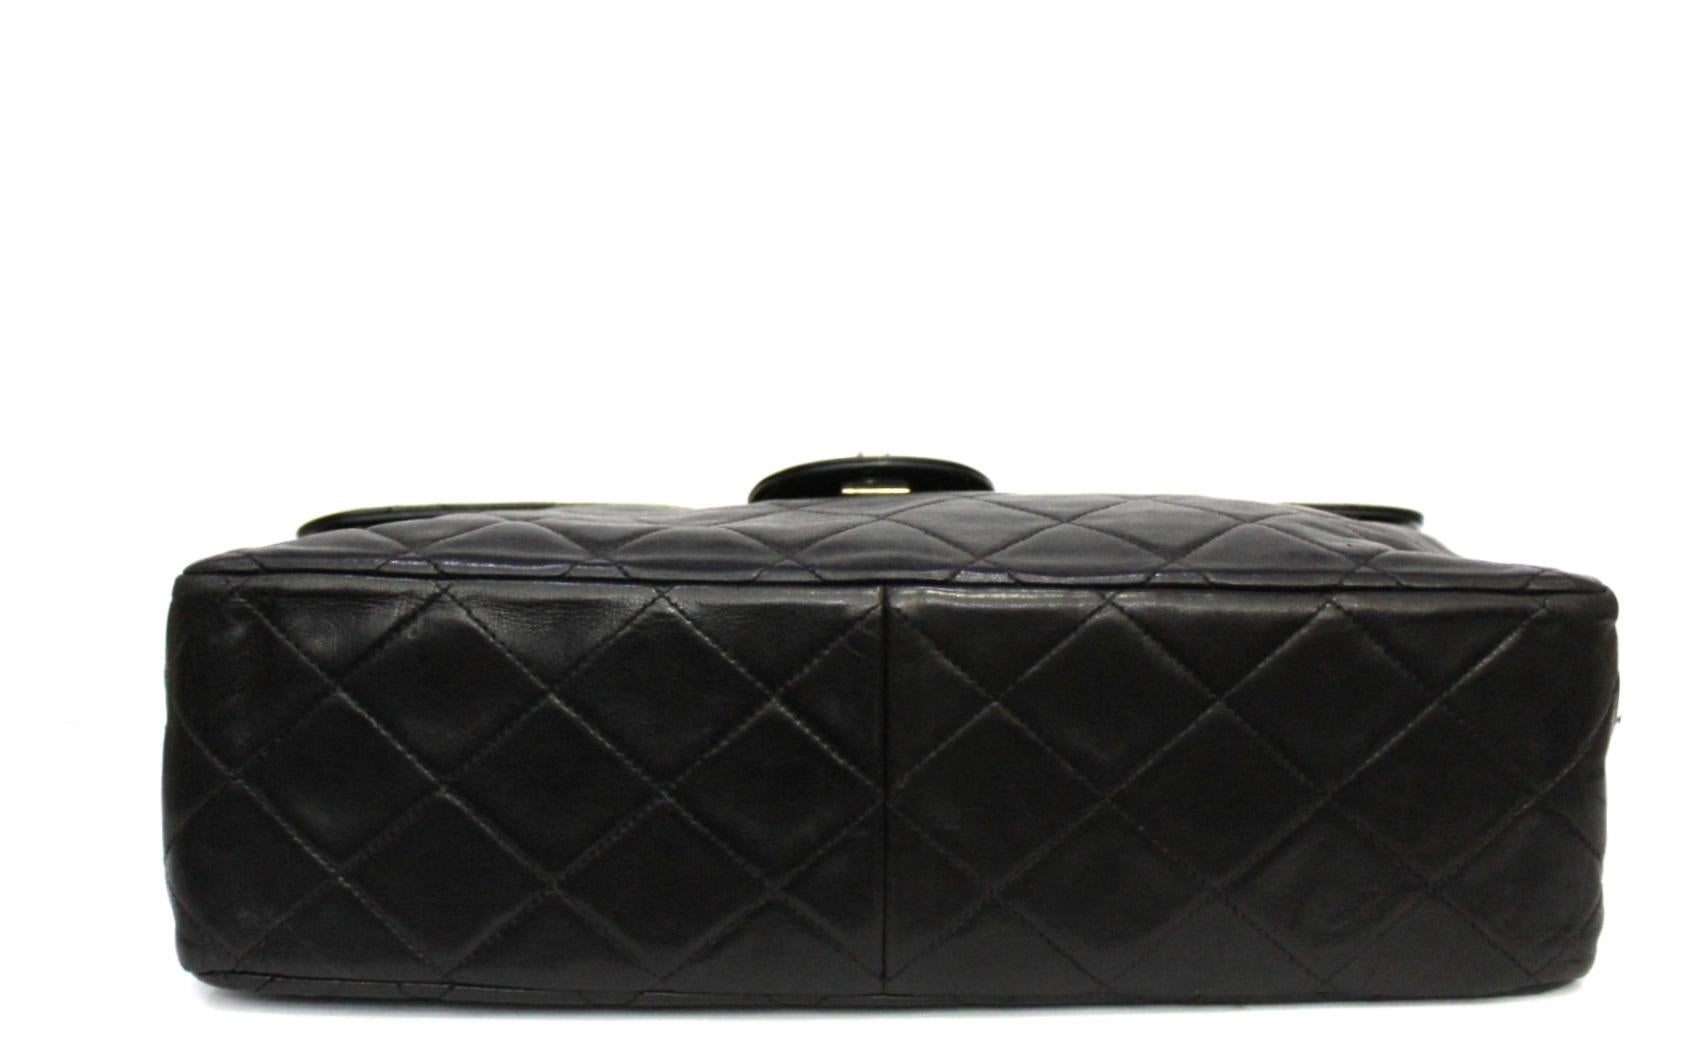 Chanel Black Leather Maxi Jumbo Bag 1